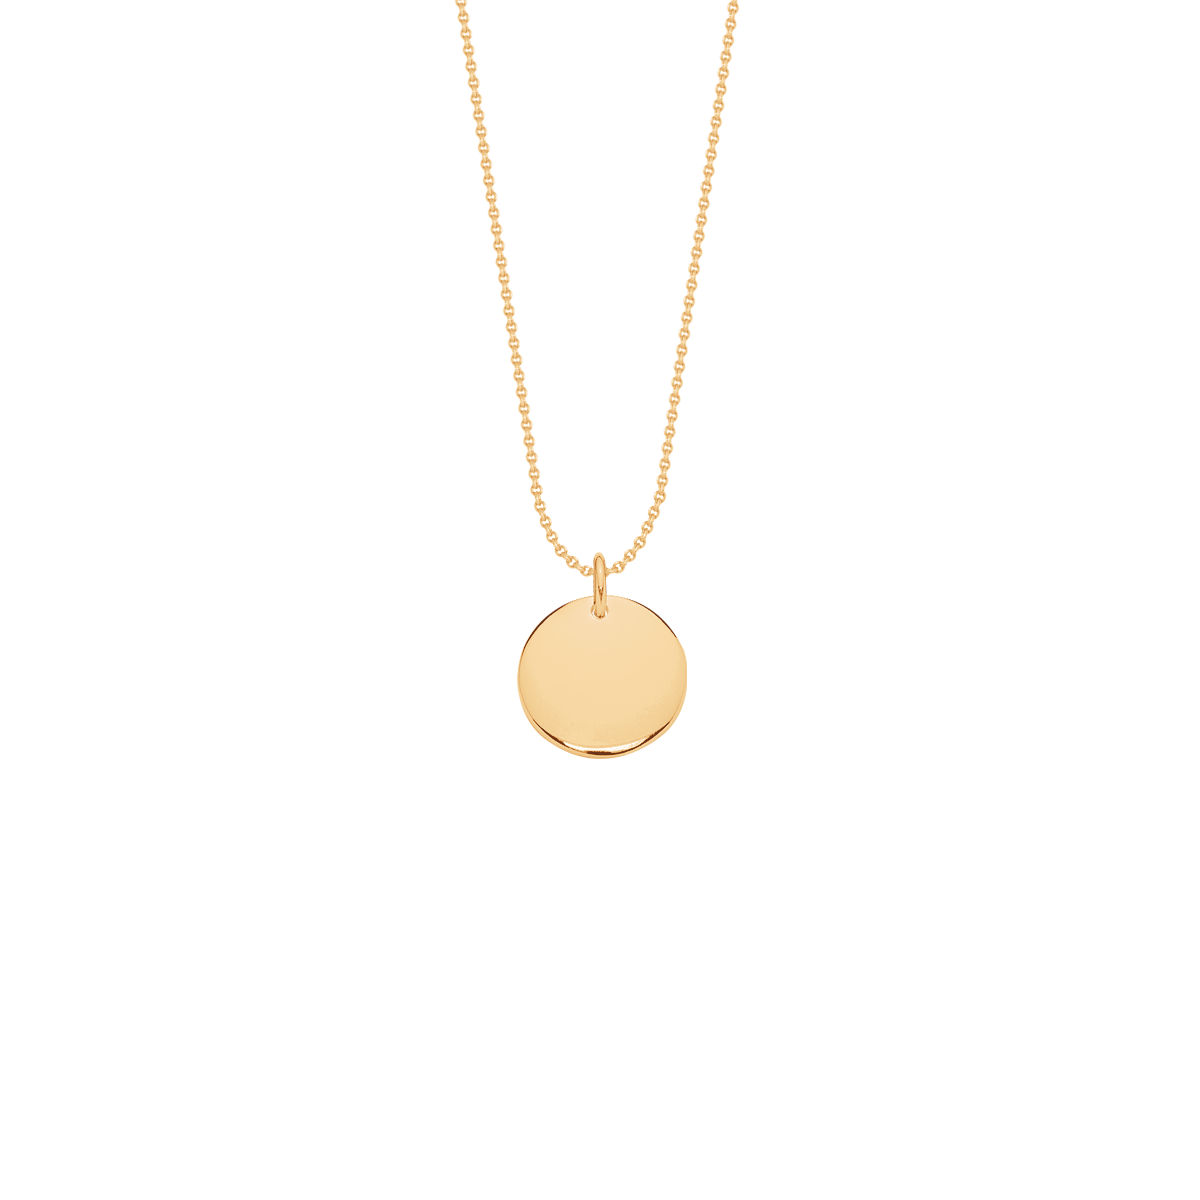 Halskette Fade mit evergoldetem 1,5 cm Medailloniner Goldmedaille an der Fadenkette